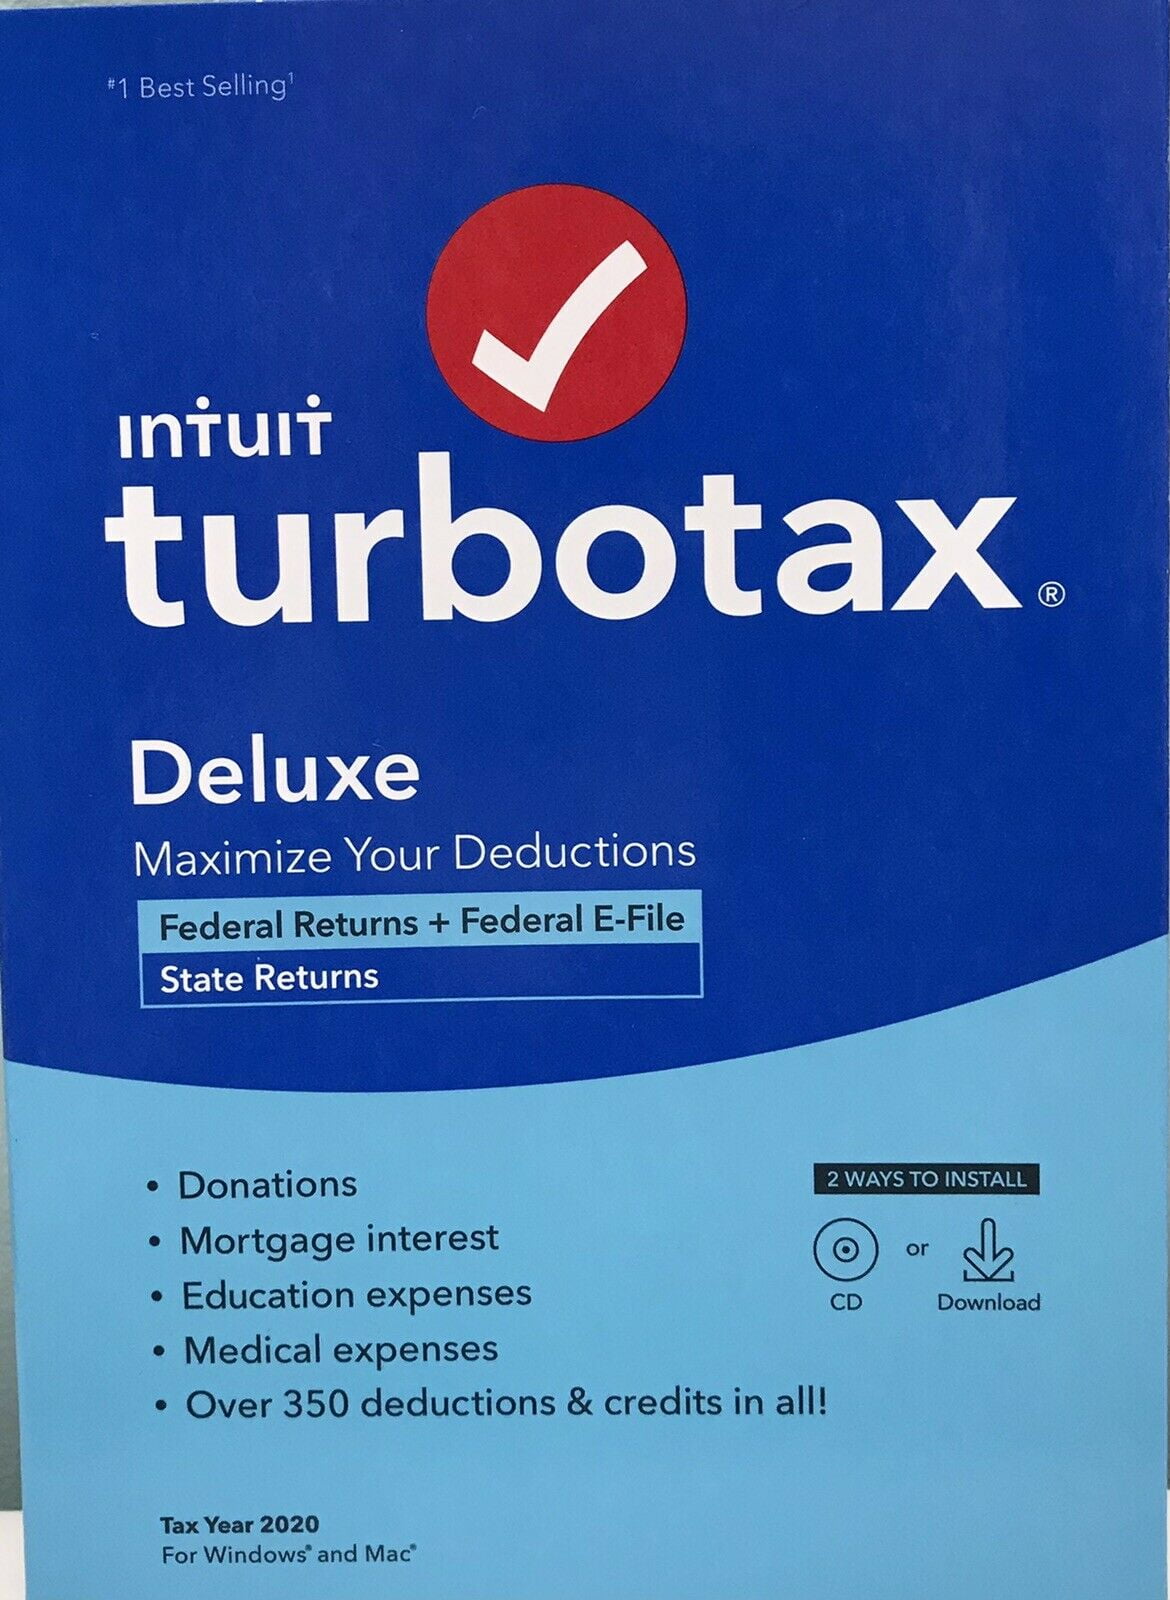 Turbotax Business Tax Filing